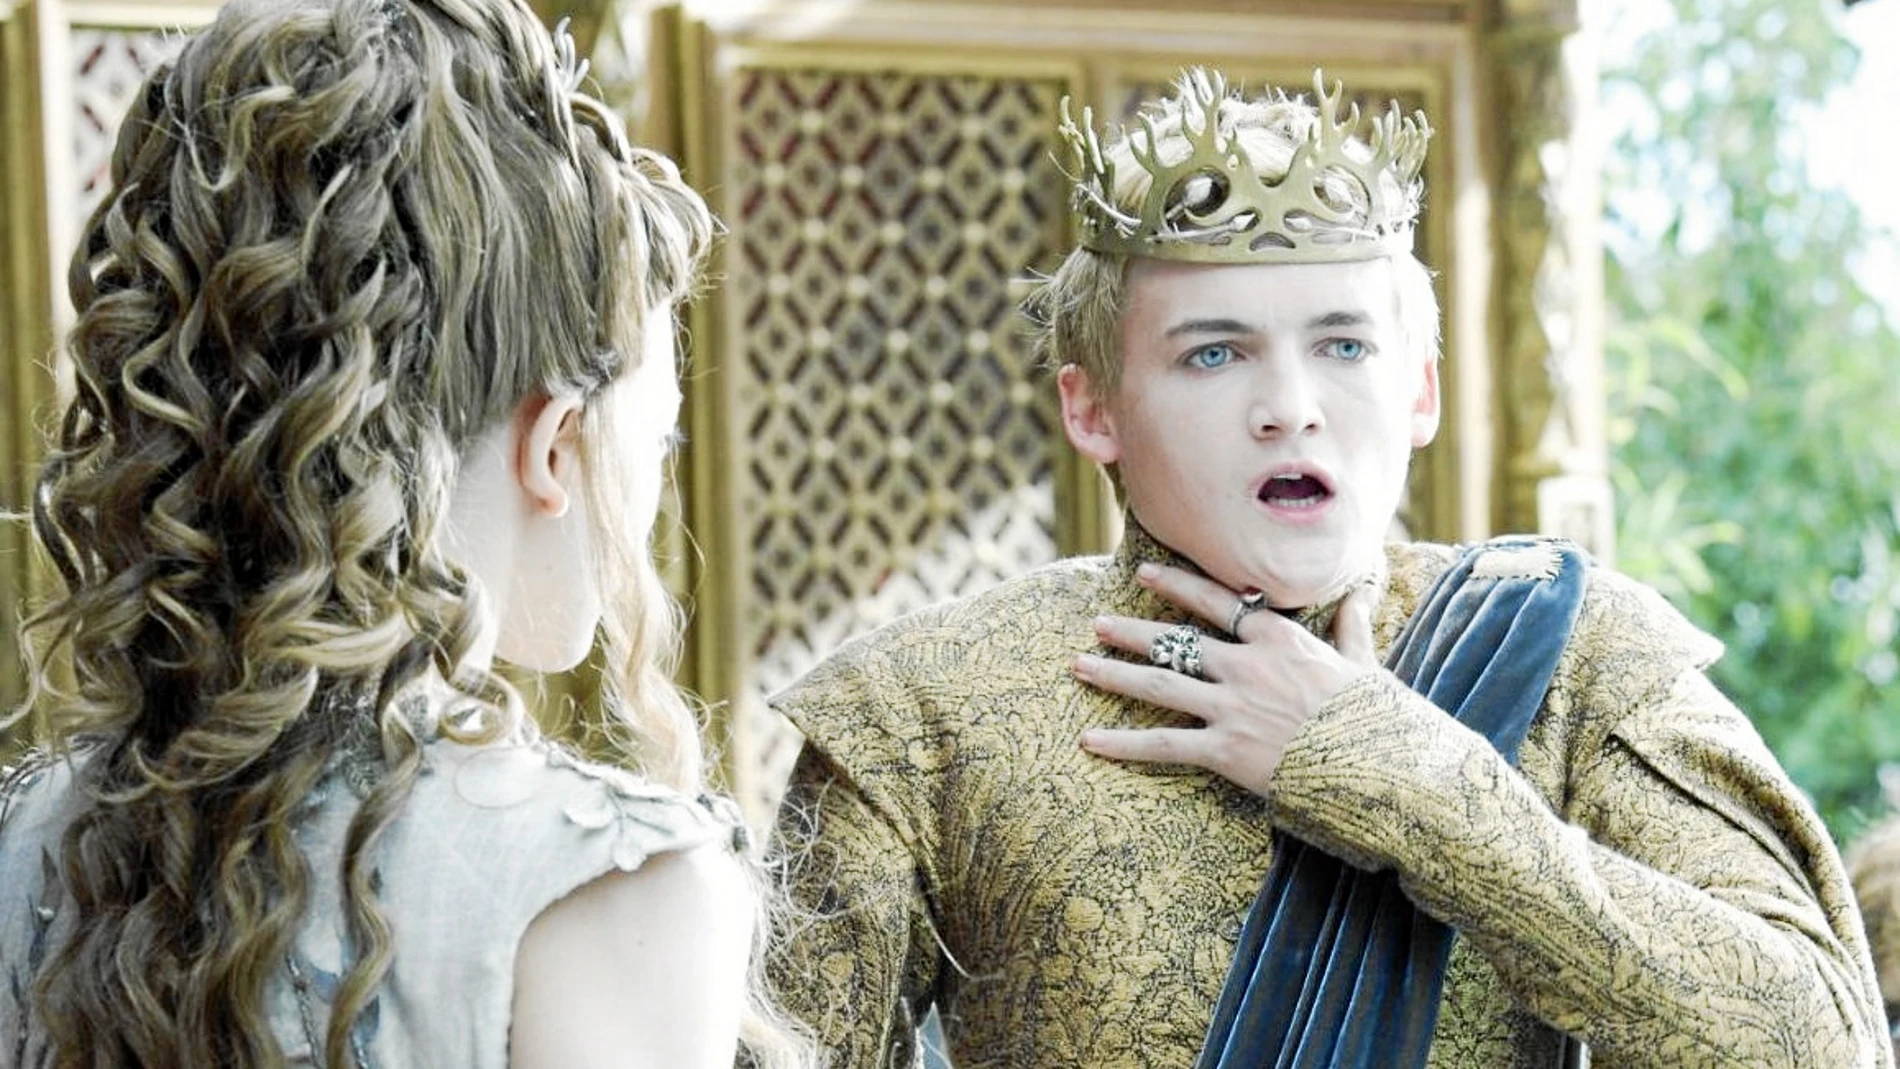 Una de las escenas más recordadas es la muerte de Joffrey Baratheon (en la imagen) durante la Boda Púrpura en la cuarta temporada